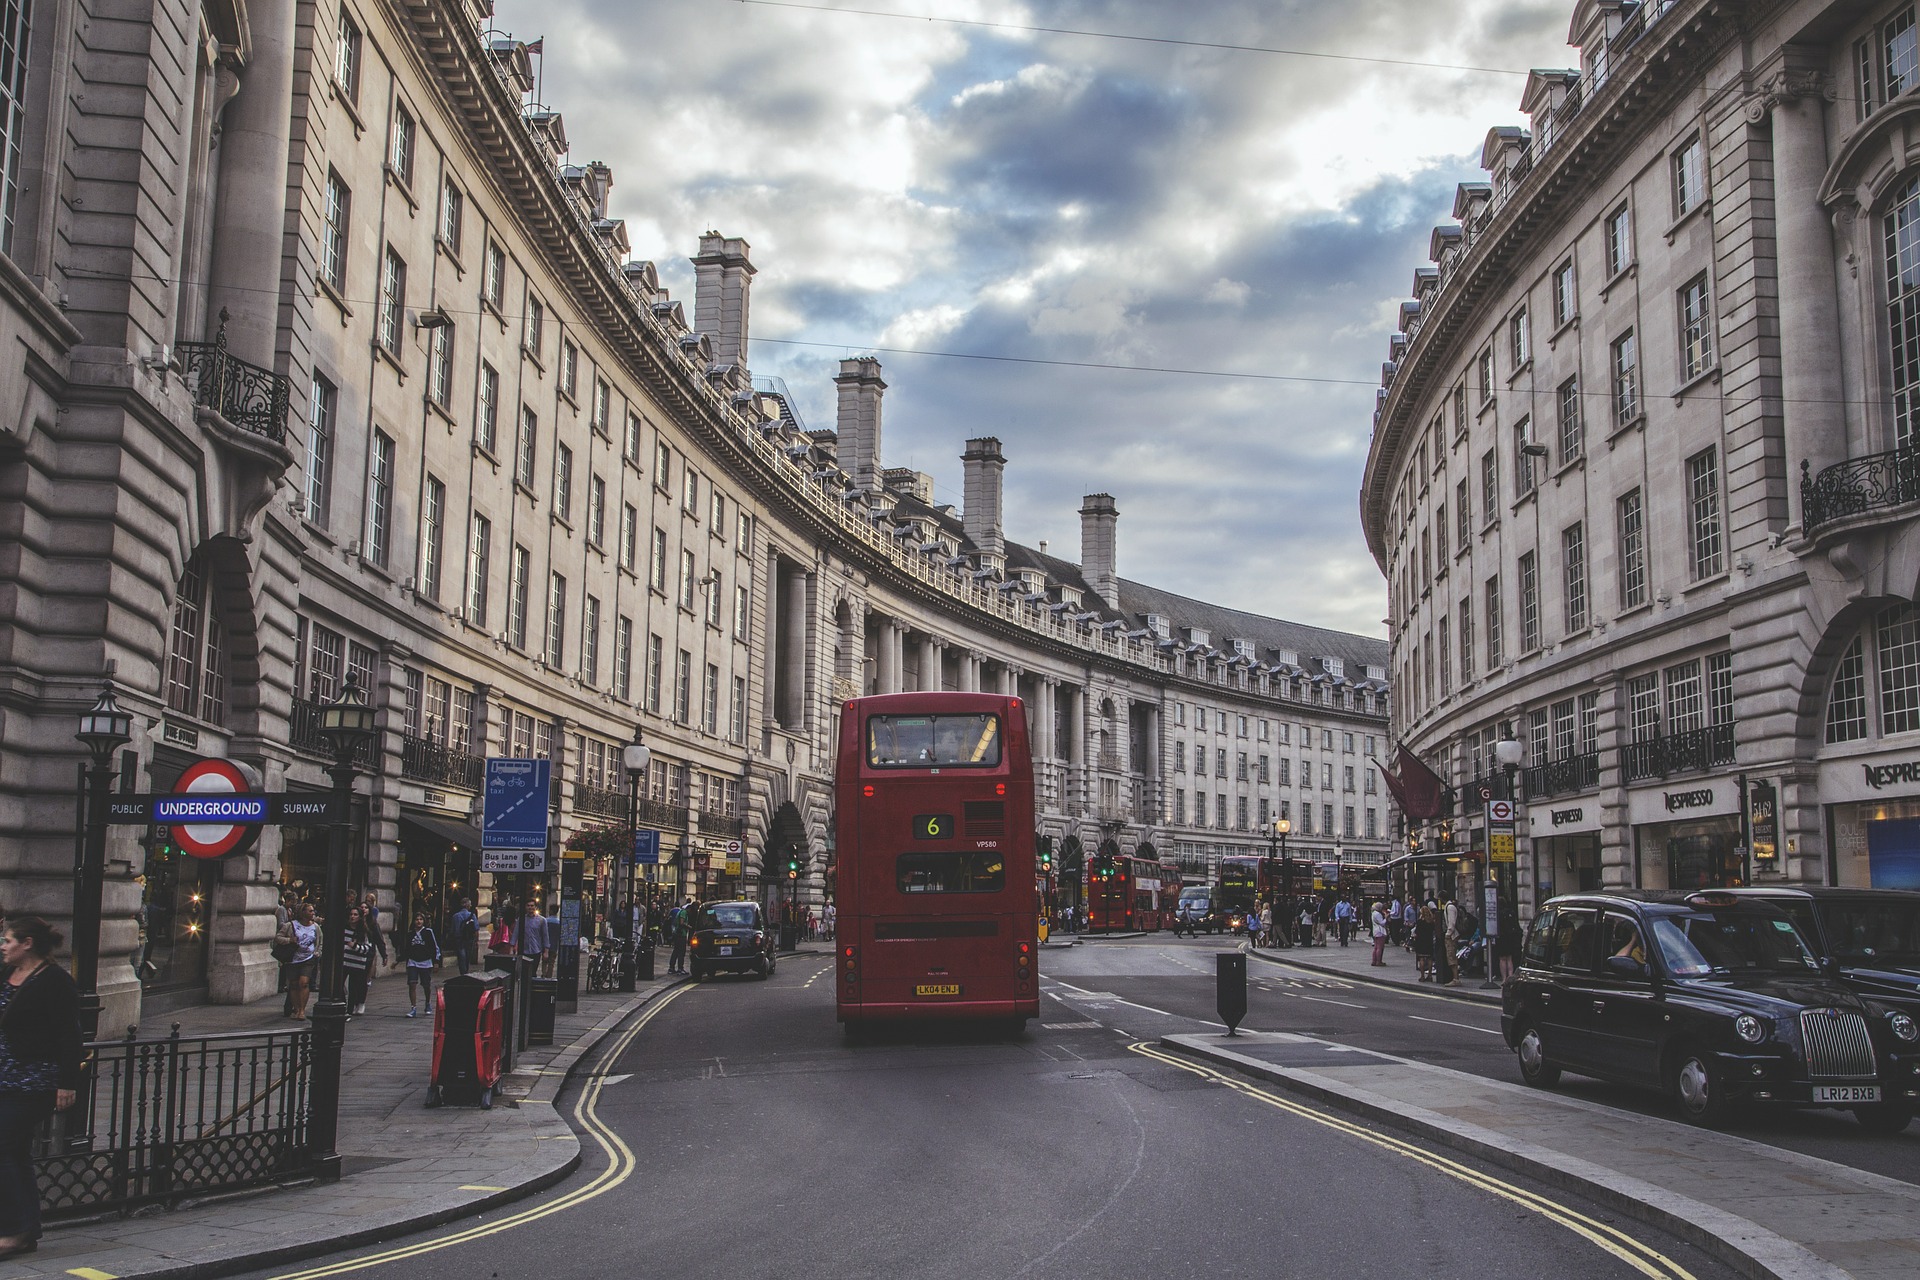 Bus londonien dans les rues de Londres